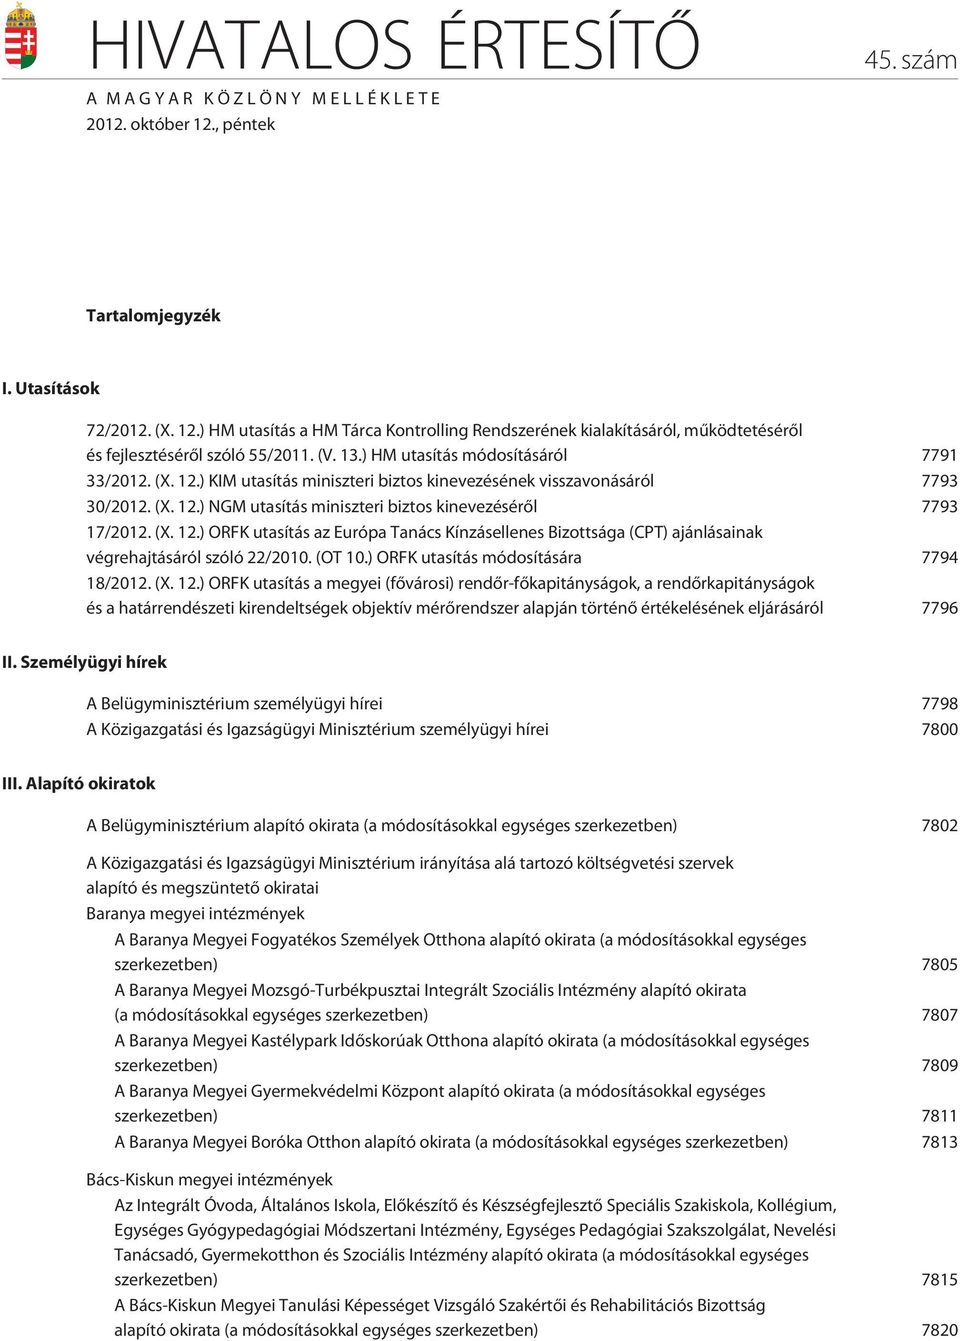 (X. 12.) ORFK utasítás az Európa Tanács Kínzásellenes Bizottsága (CPT) ajánlásainak végrehajtásáról szóló 22/2010. (OT 10.) ORFK utasítás módosítására 7794 18/2012. (X. 12.) ORFK utasítás a megyei (fõvárosi) rendõr-fõkapitányságok, a rendõrkapitányságok és a határrendészeti kirendeltségek objektív mérõrendszer alapján történõ értékelésének eljárásáról 7796 II.